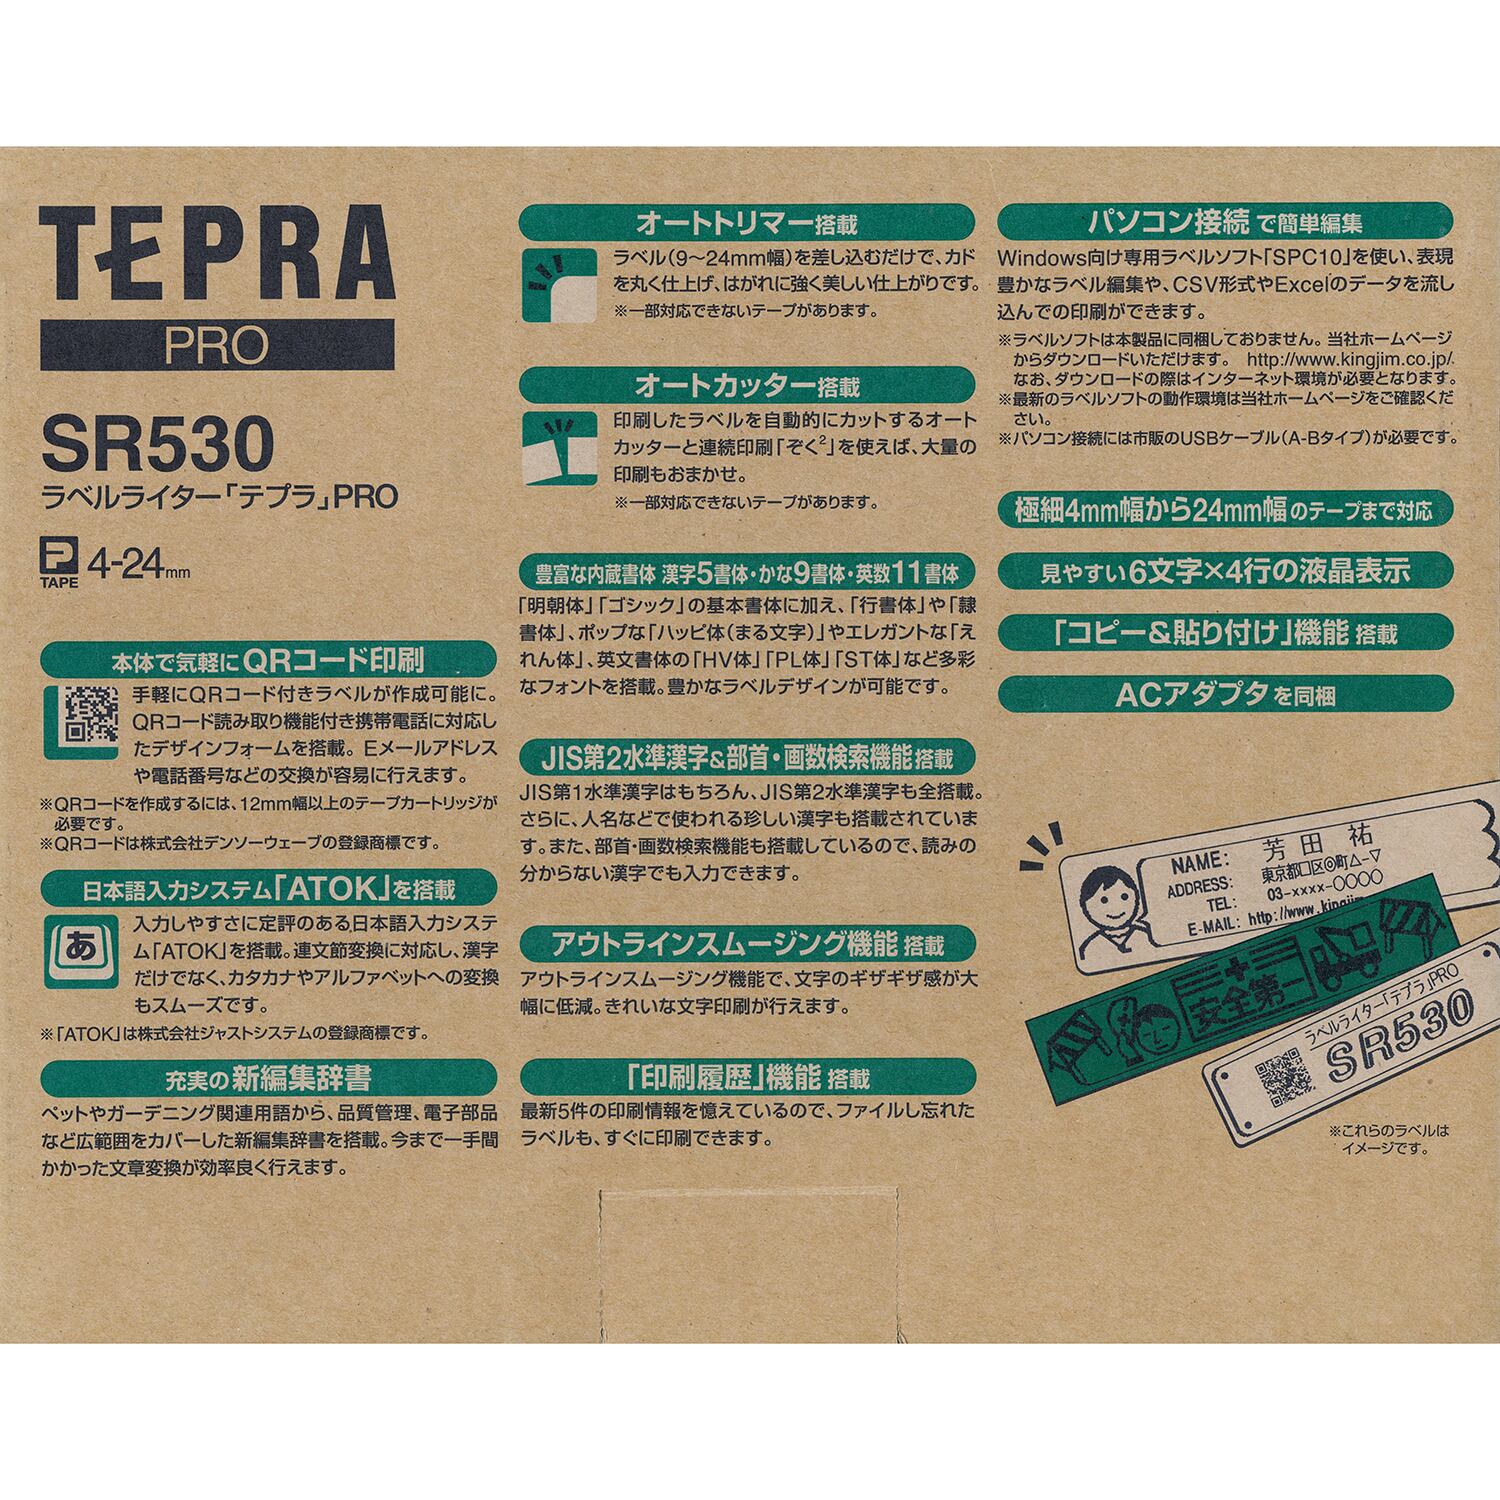 テプラ PRO SR530 キングジム アルファノート(六本木文房具店)